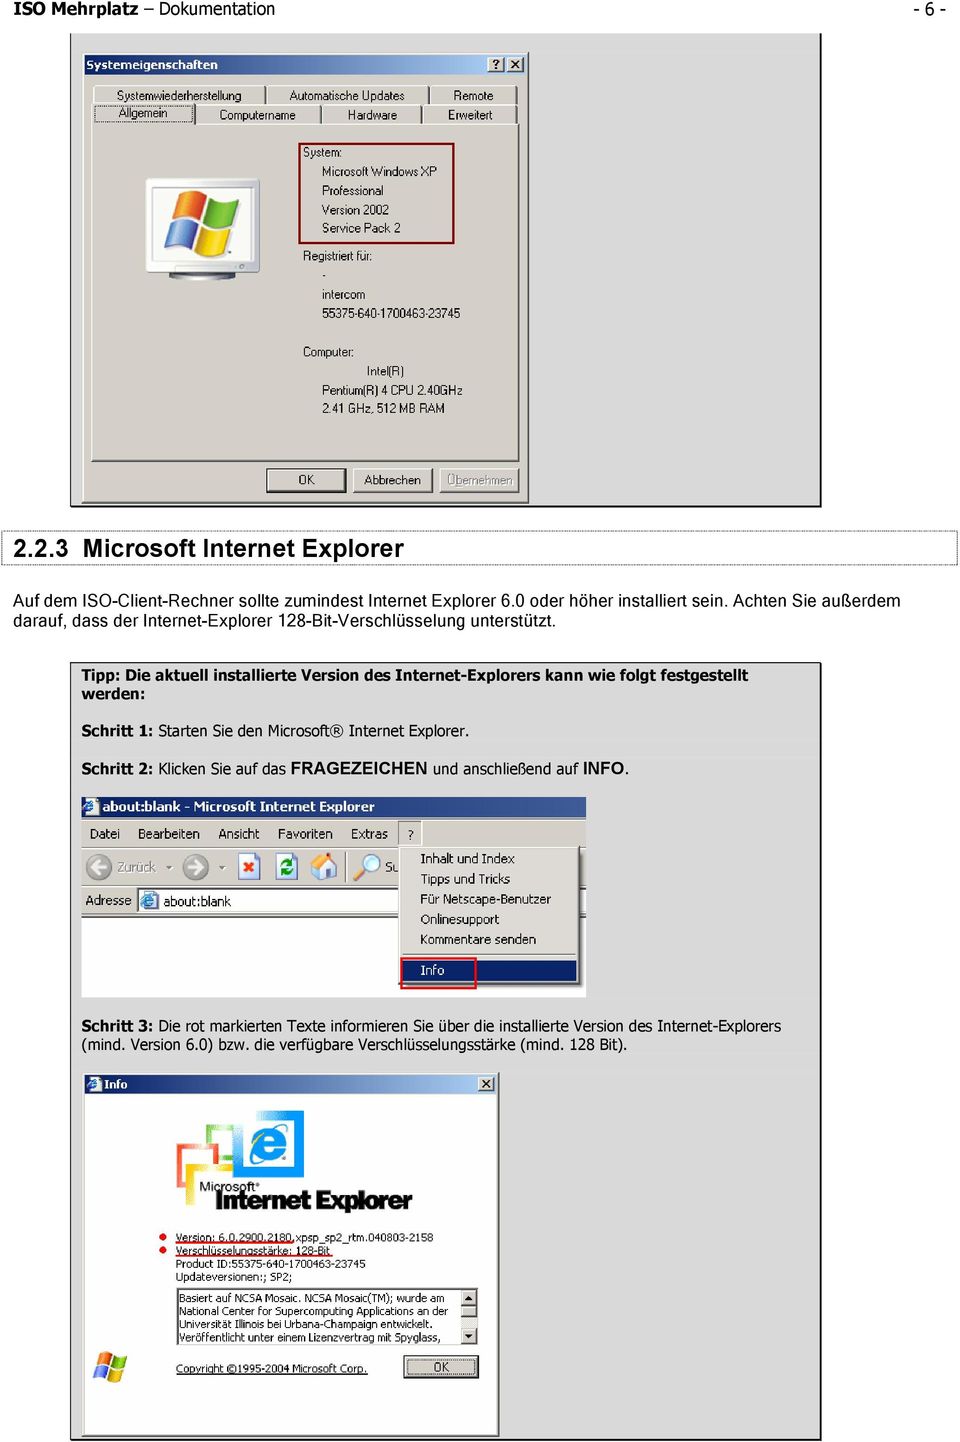 Tipp: Die aktuell installierte Version des Internet-Explorers kann wie folgt festgestellt werden: Schritt 1: Starten Sie den Microsoft Internet Explorer.